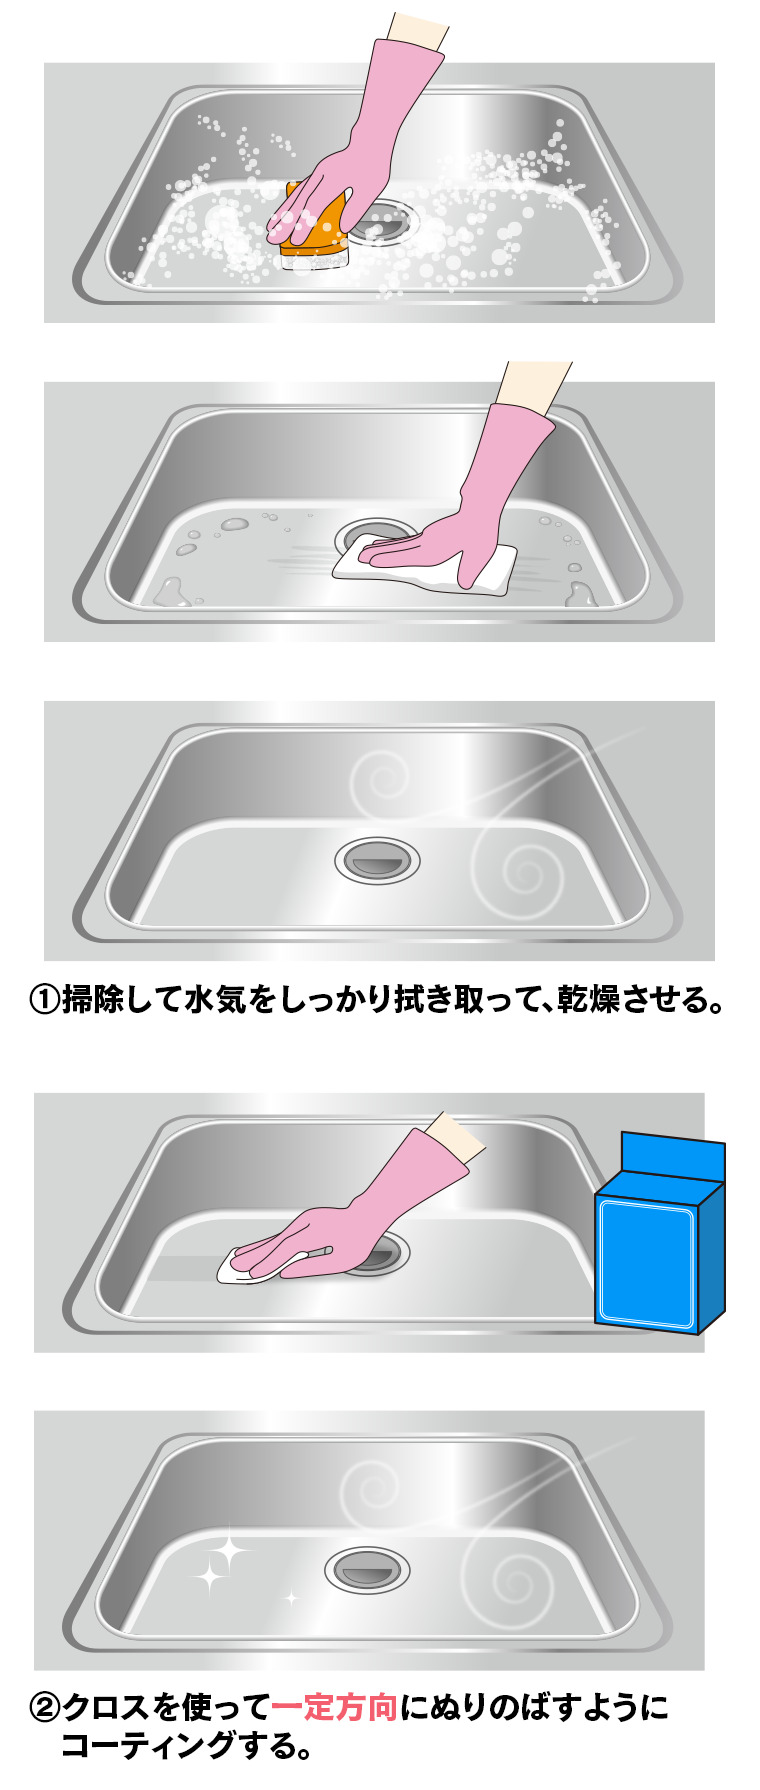 1）掃除して水気をしっかり拭き取って、乾燥させる 
2）クロスを使って一定方向にぬりのばすようにコーティングする 